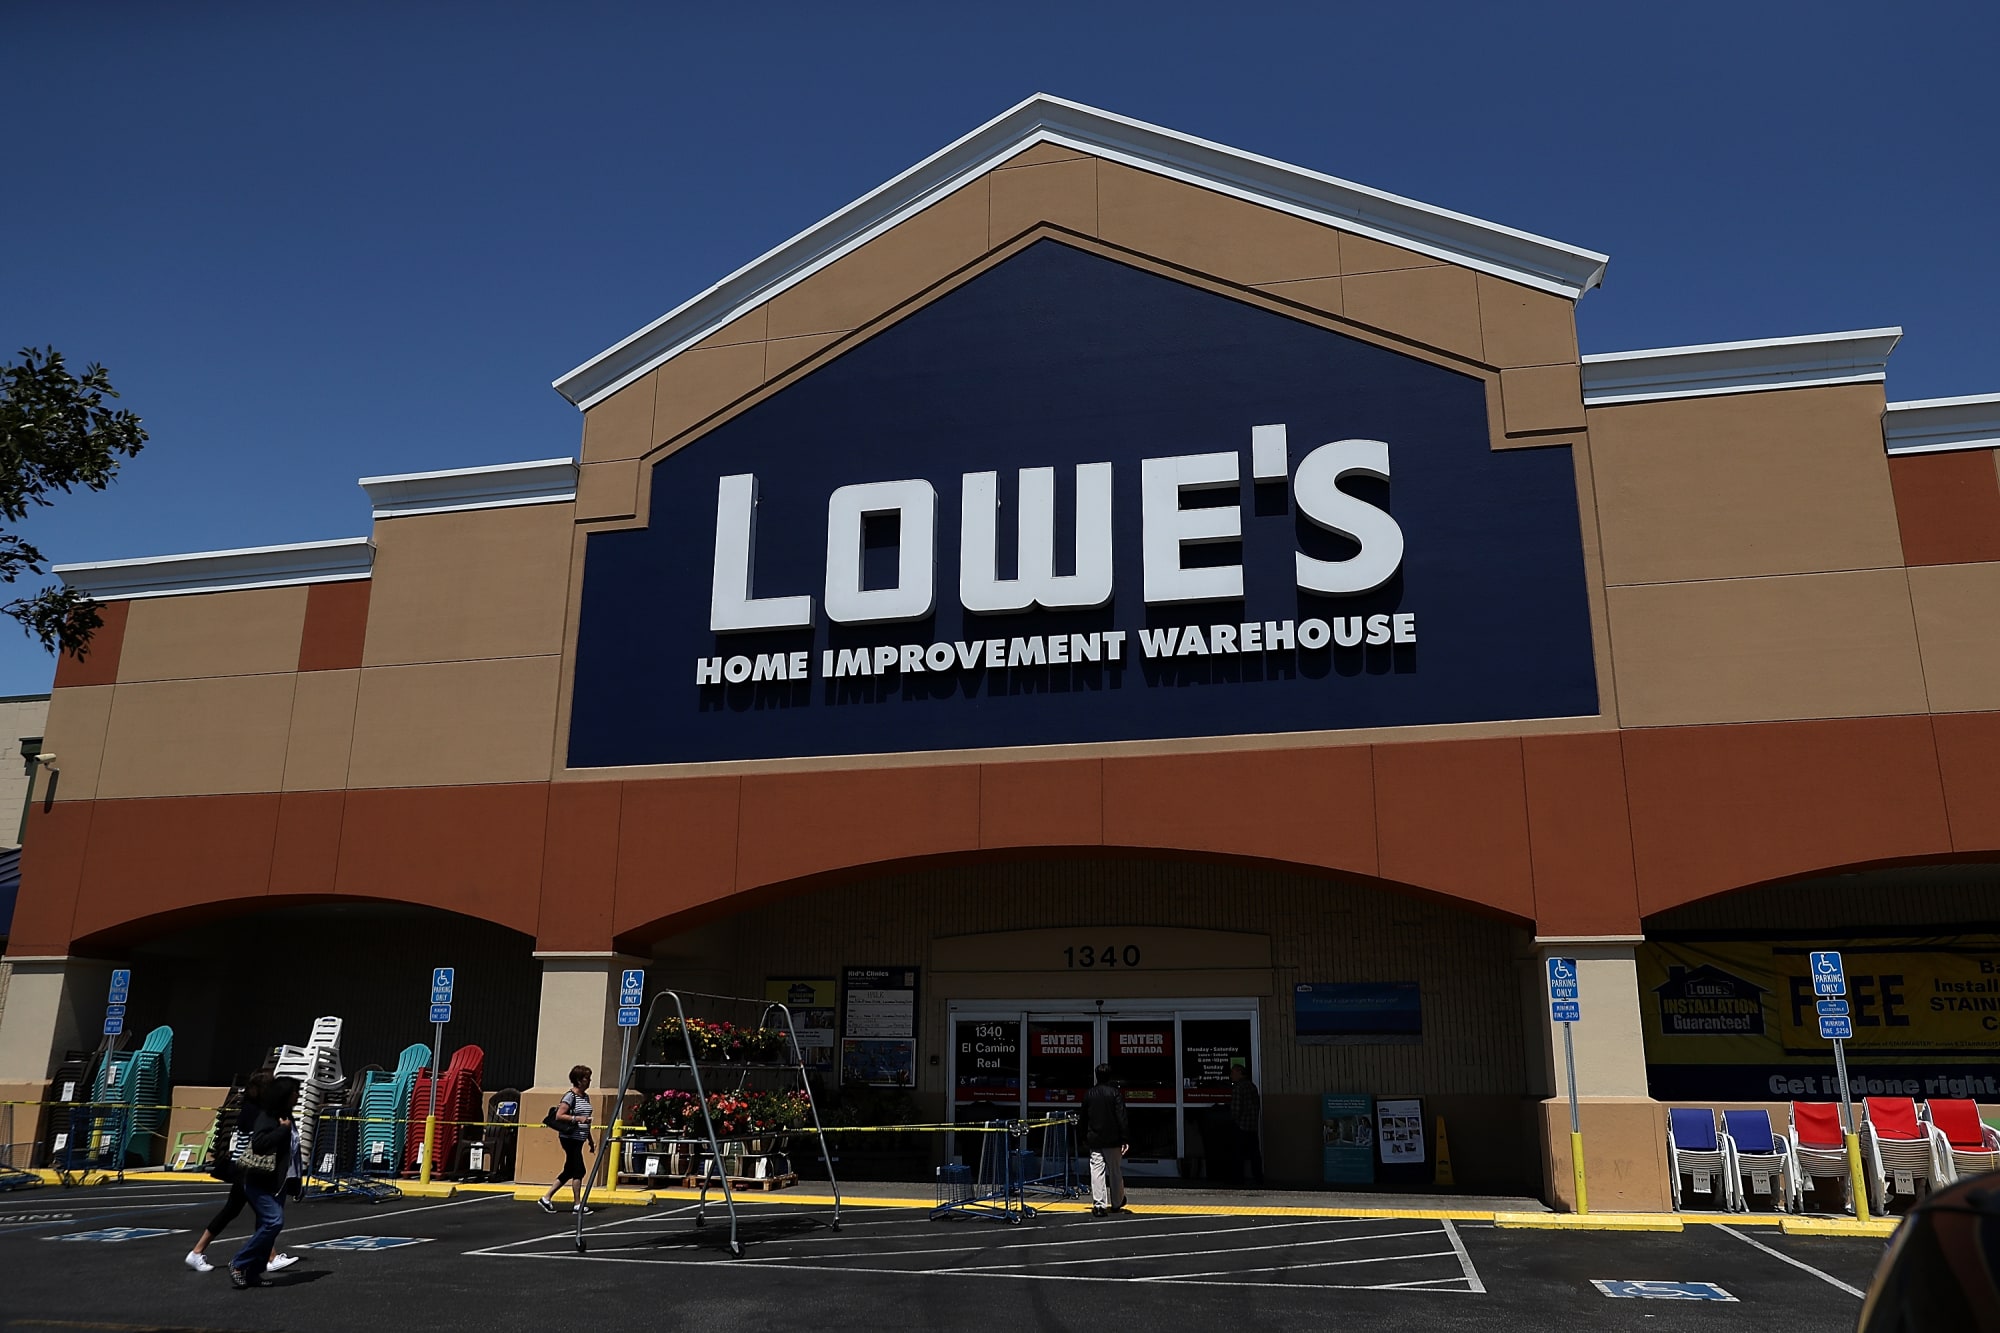 Is Lowe's open on 4th of July?